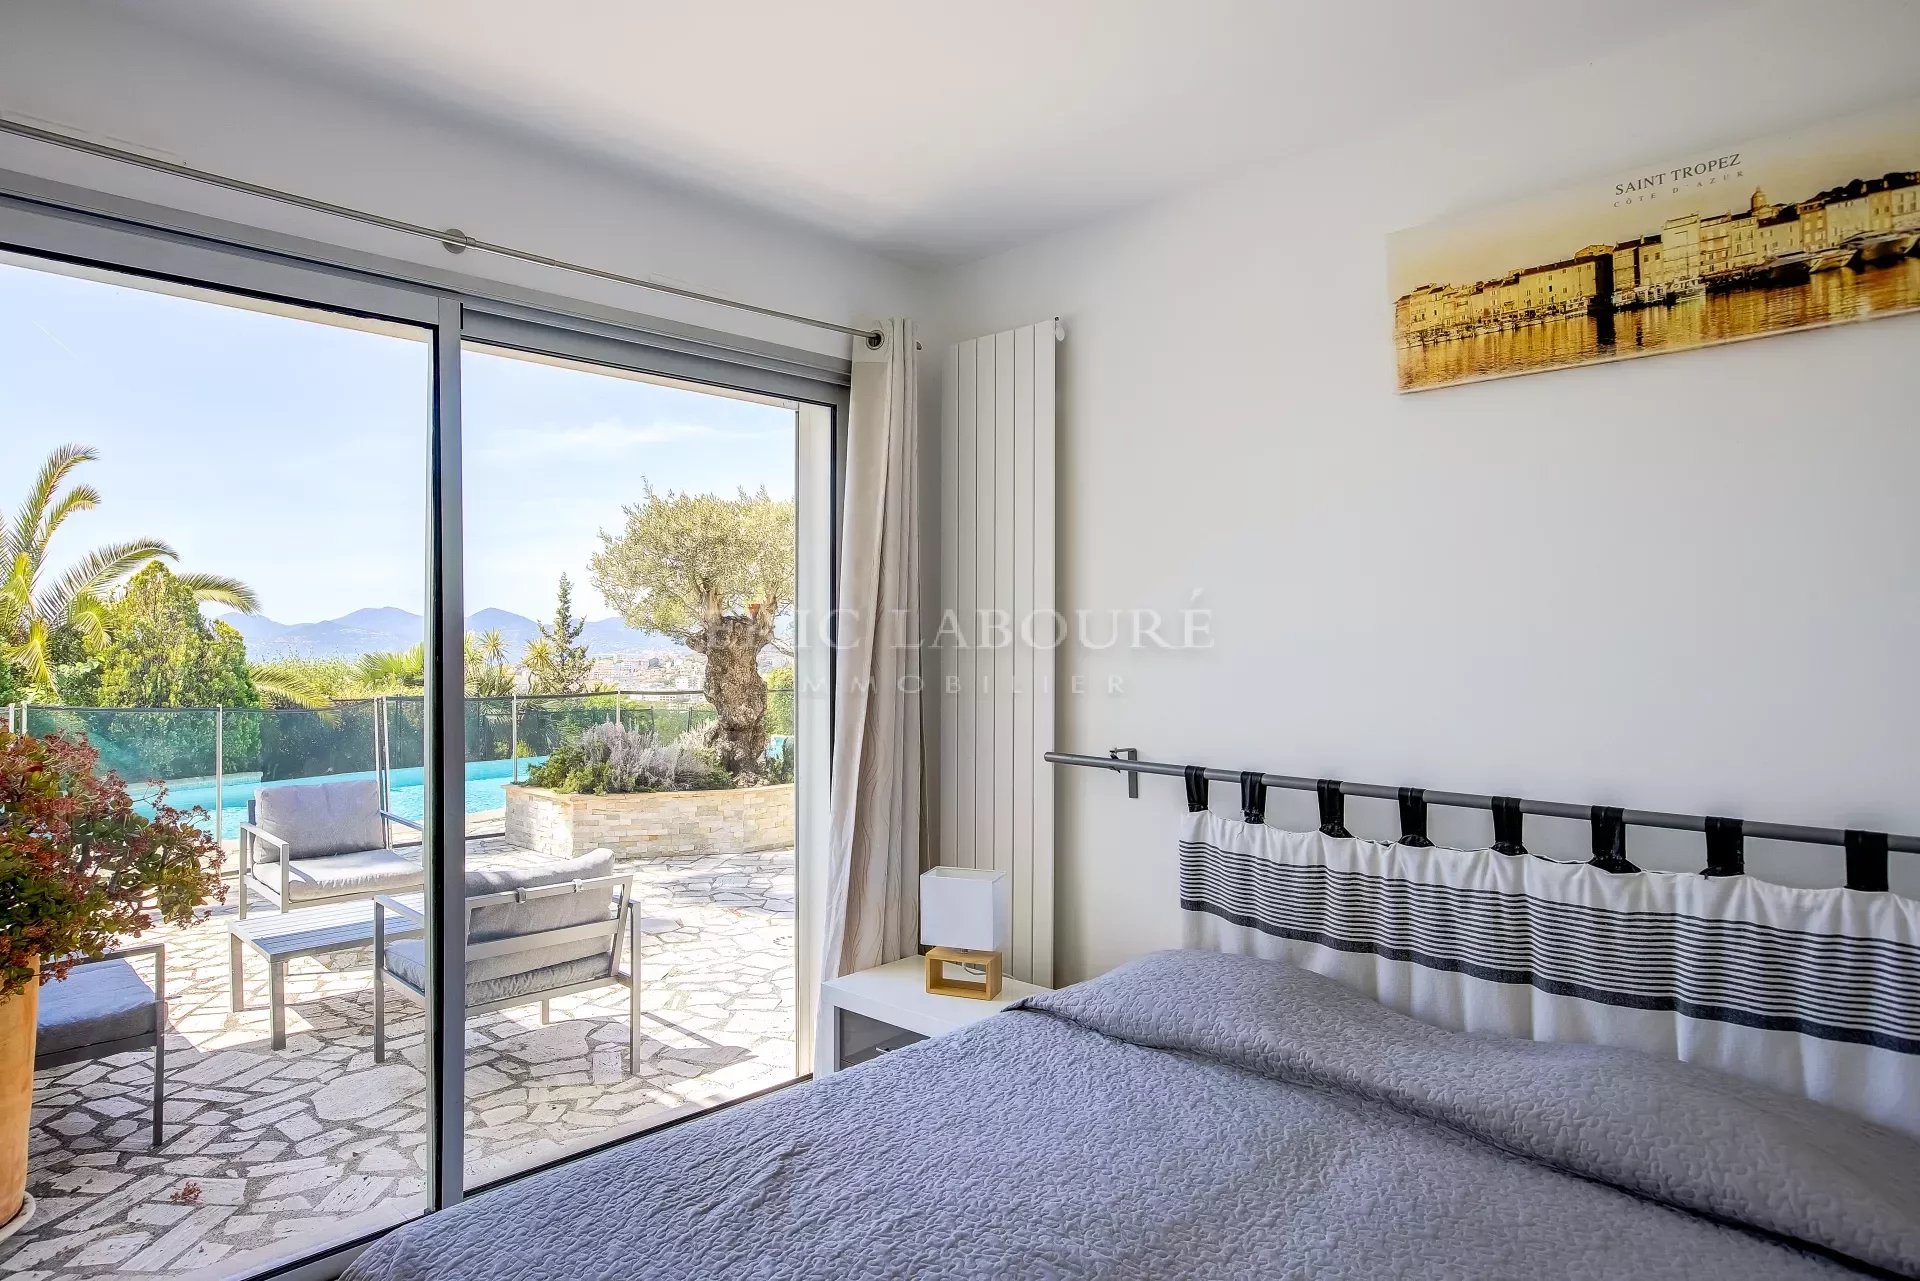 Cannes California sea view villa